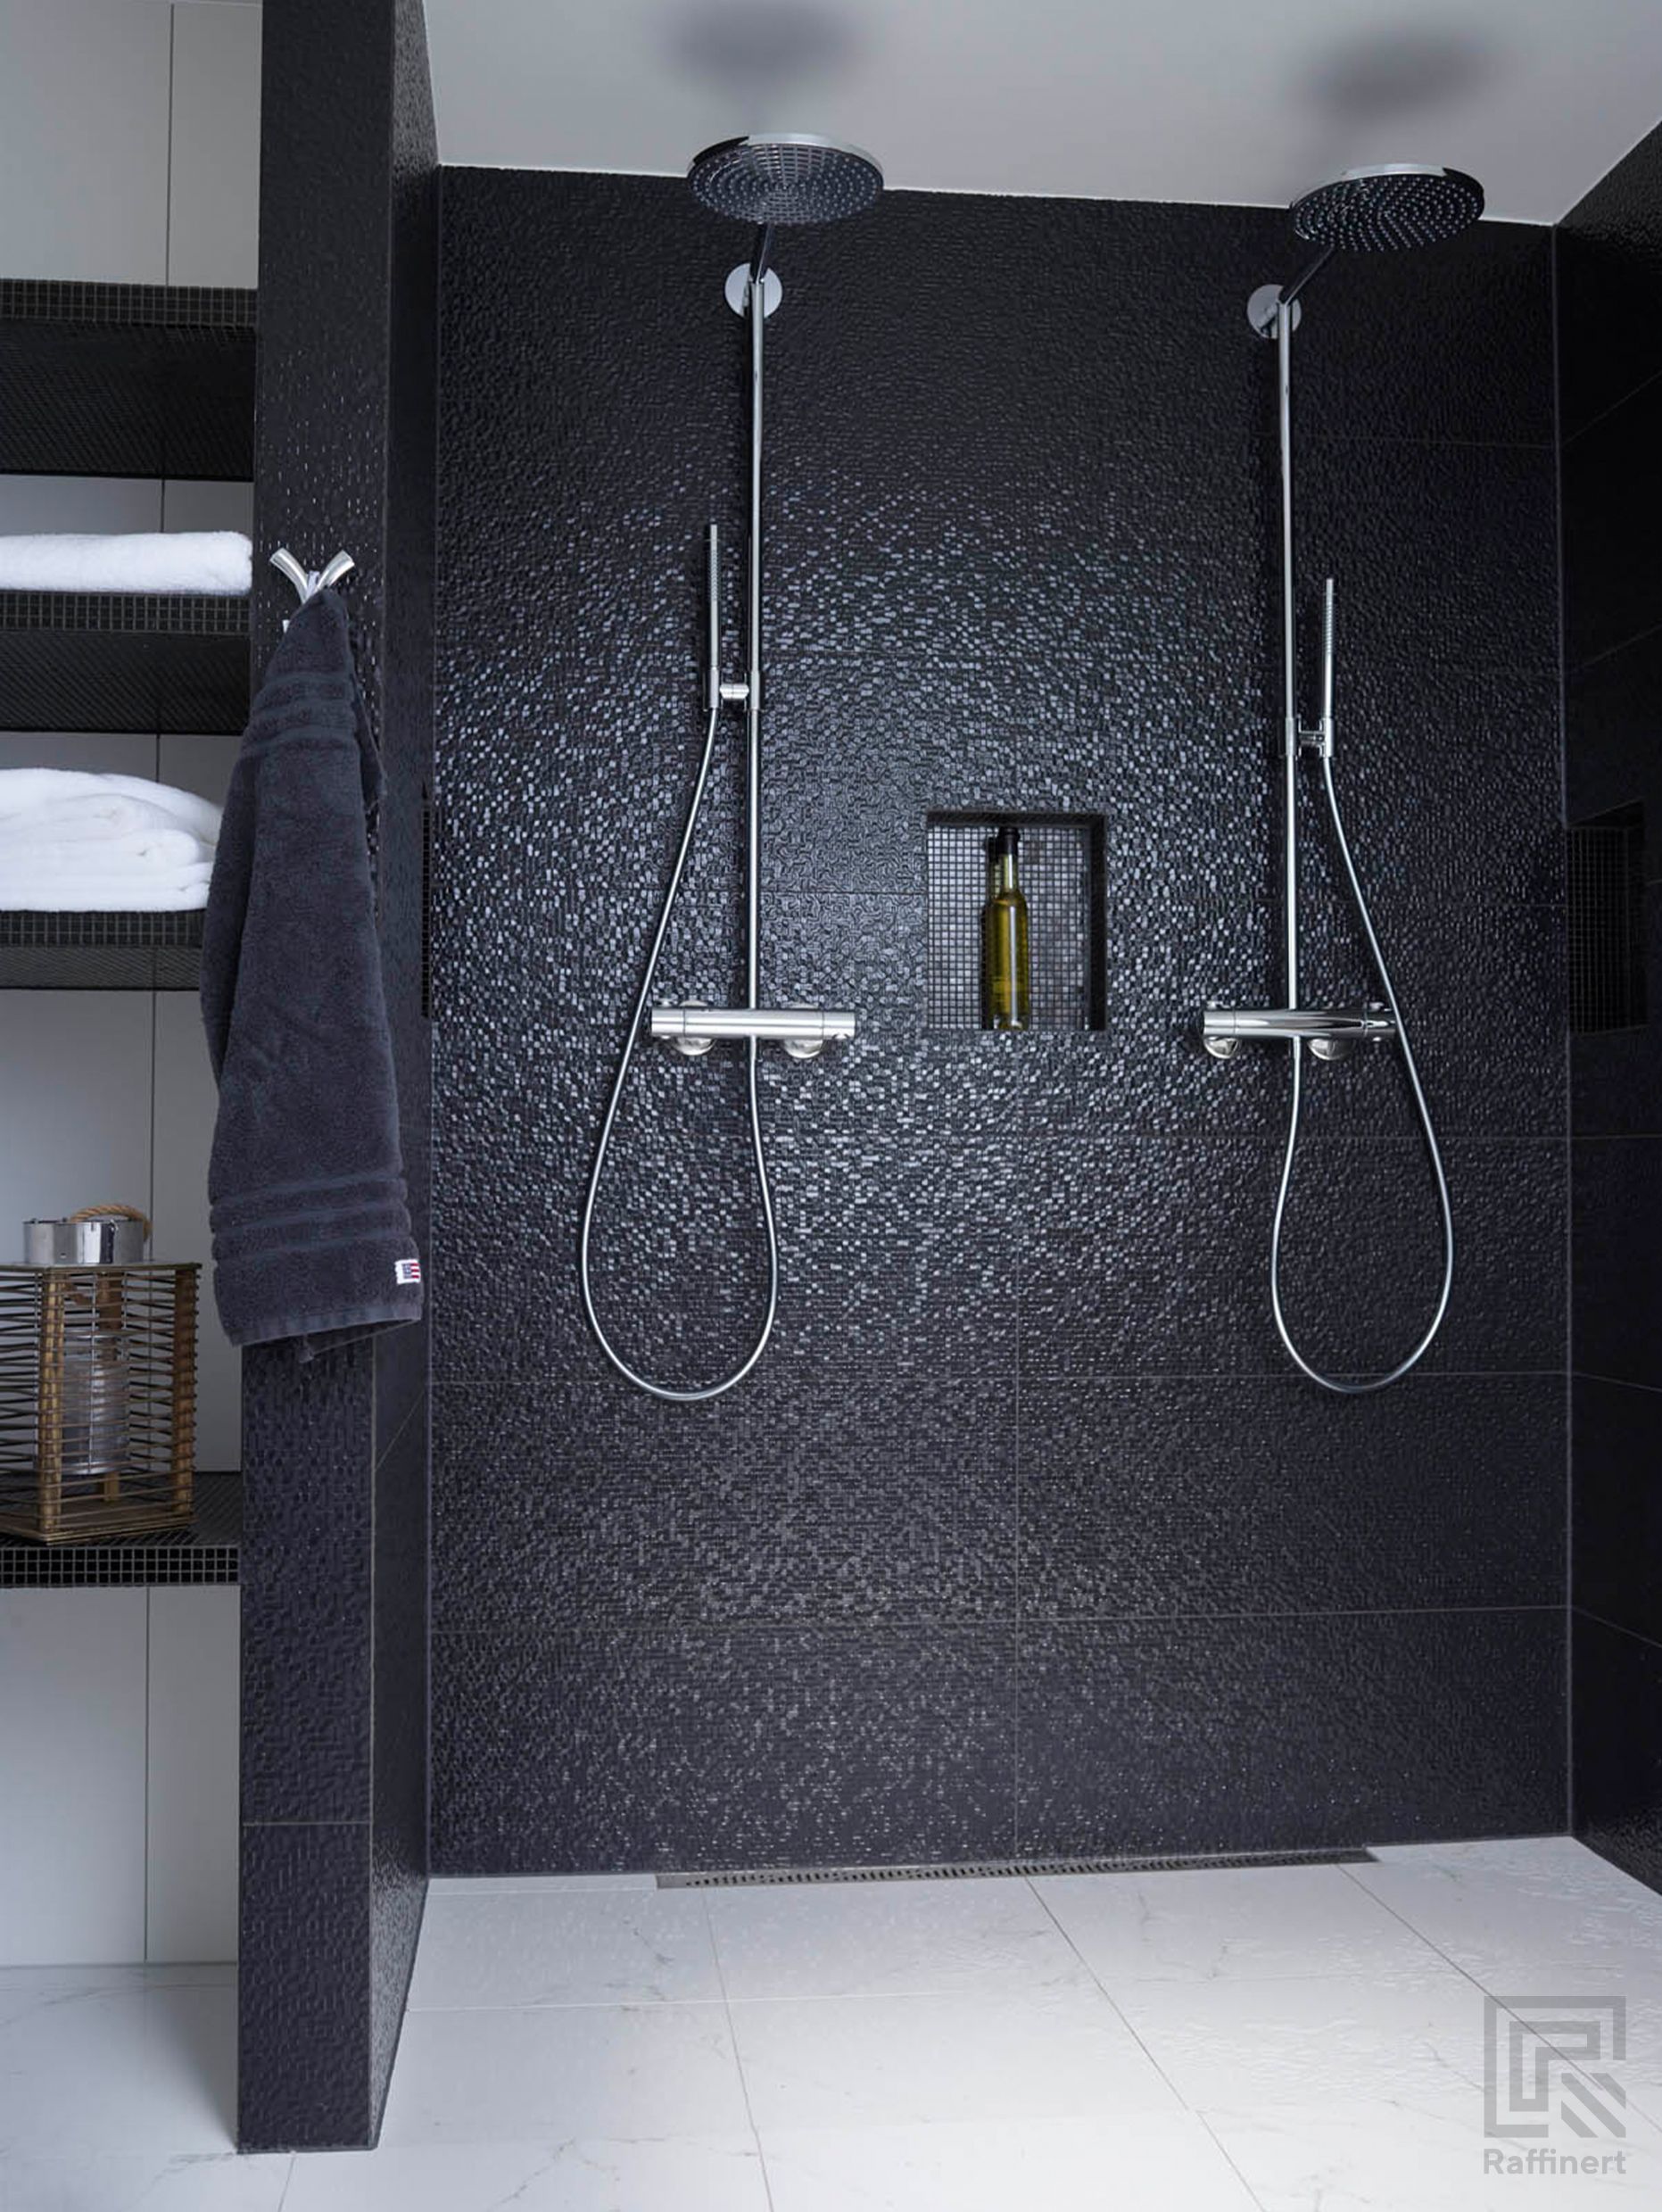 Dobbel dusj med mosaikfliser i sort. Midt i dusjen en nisje til sjampooflasker og såpe. Ved siden er det nisjer til håndklær laget med de samme flisene.